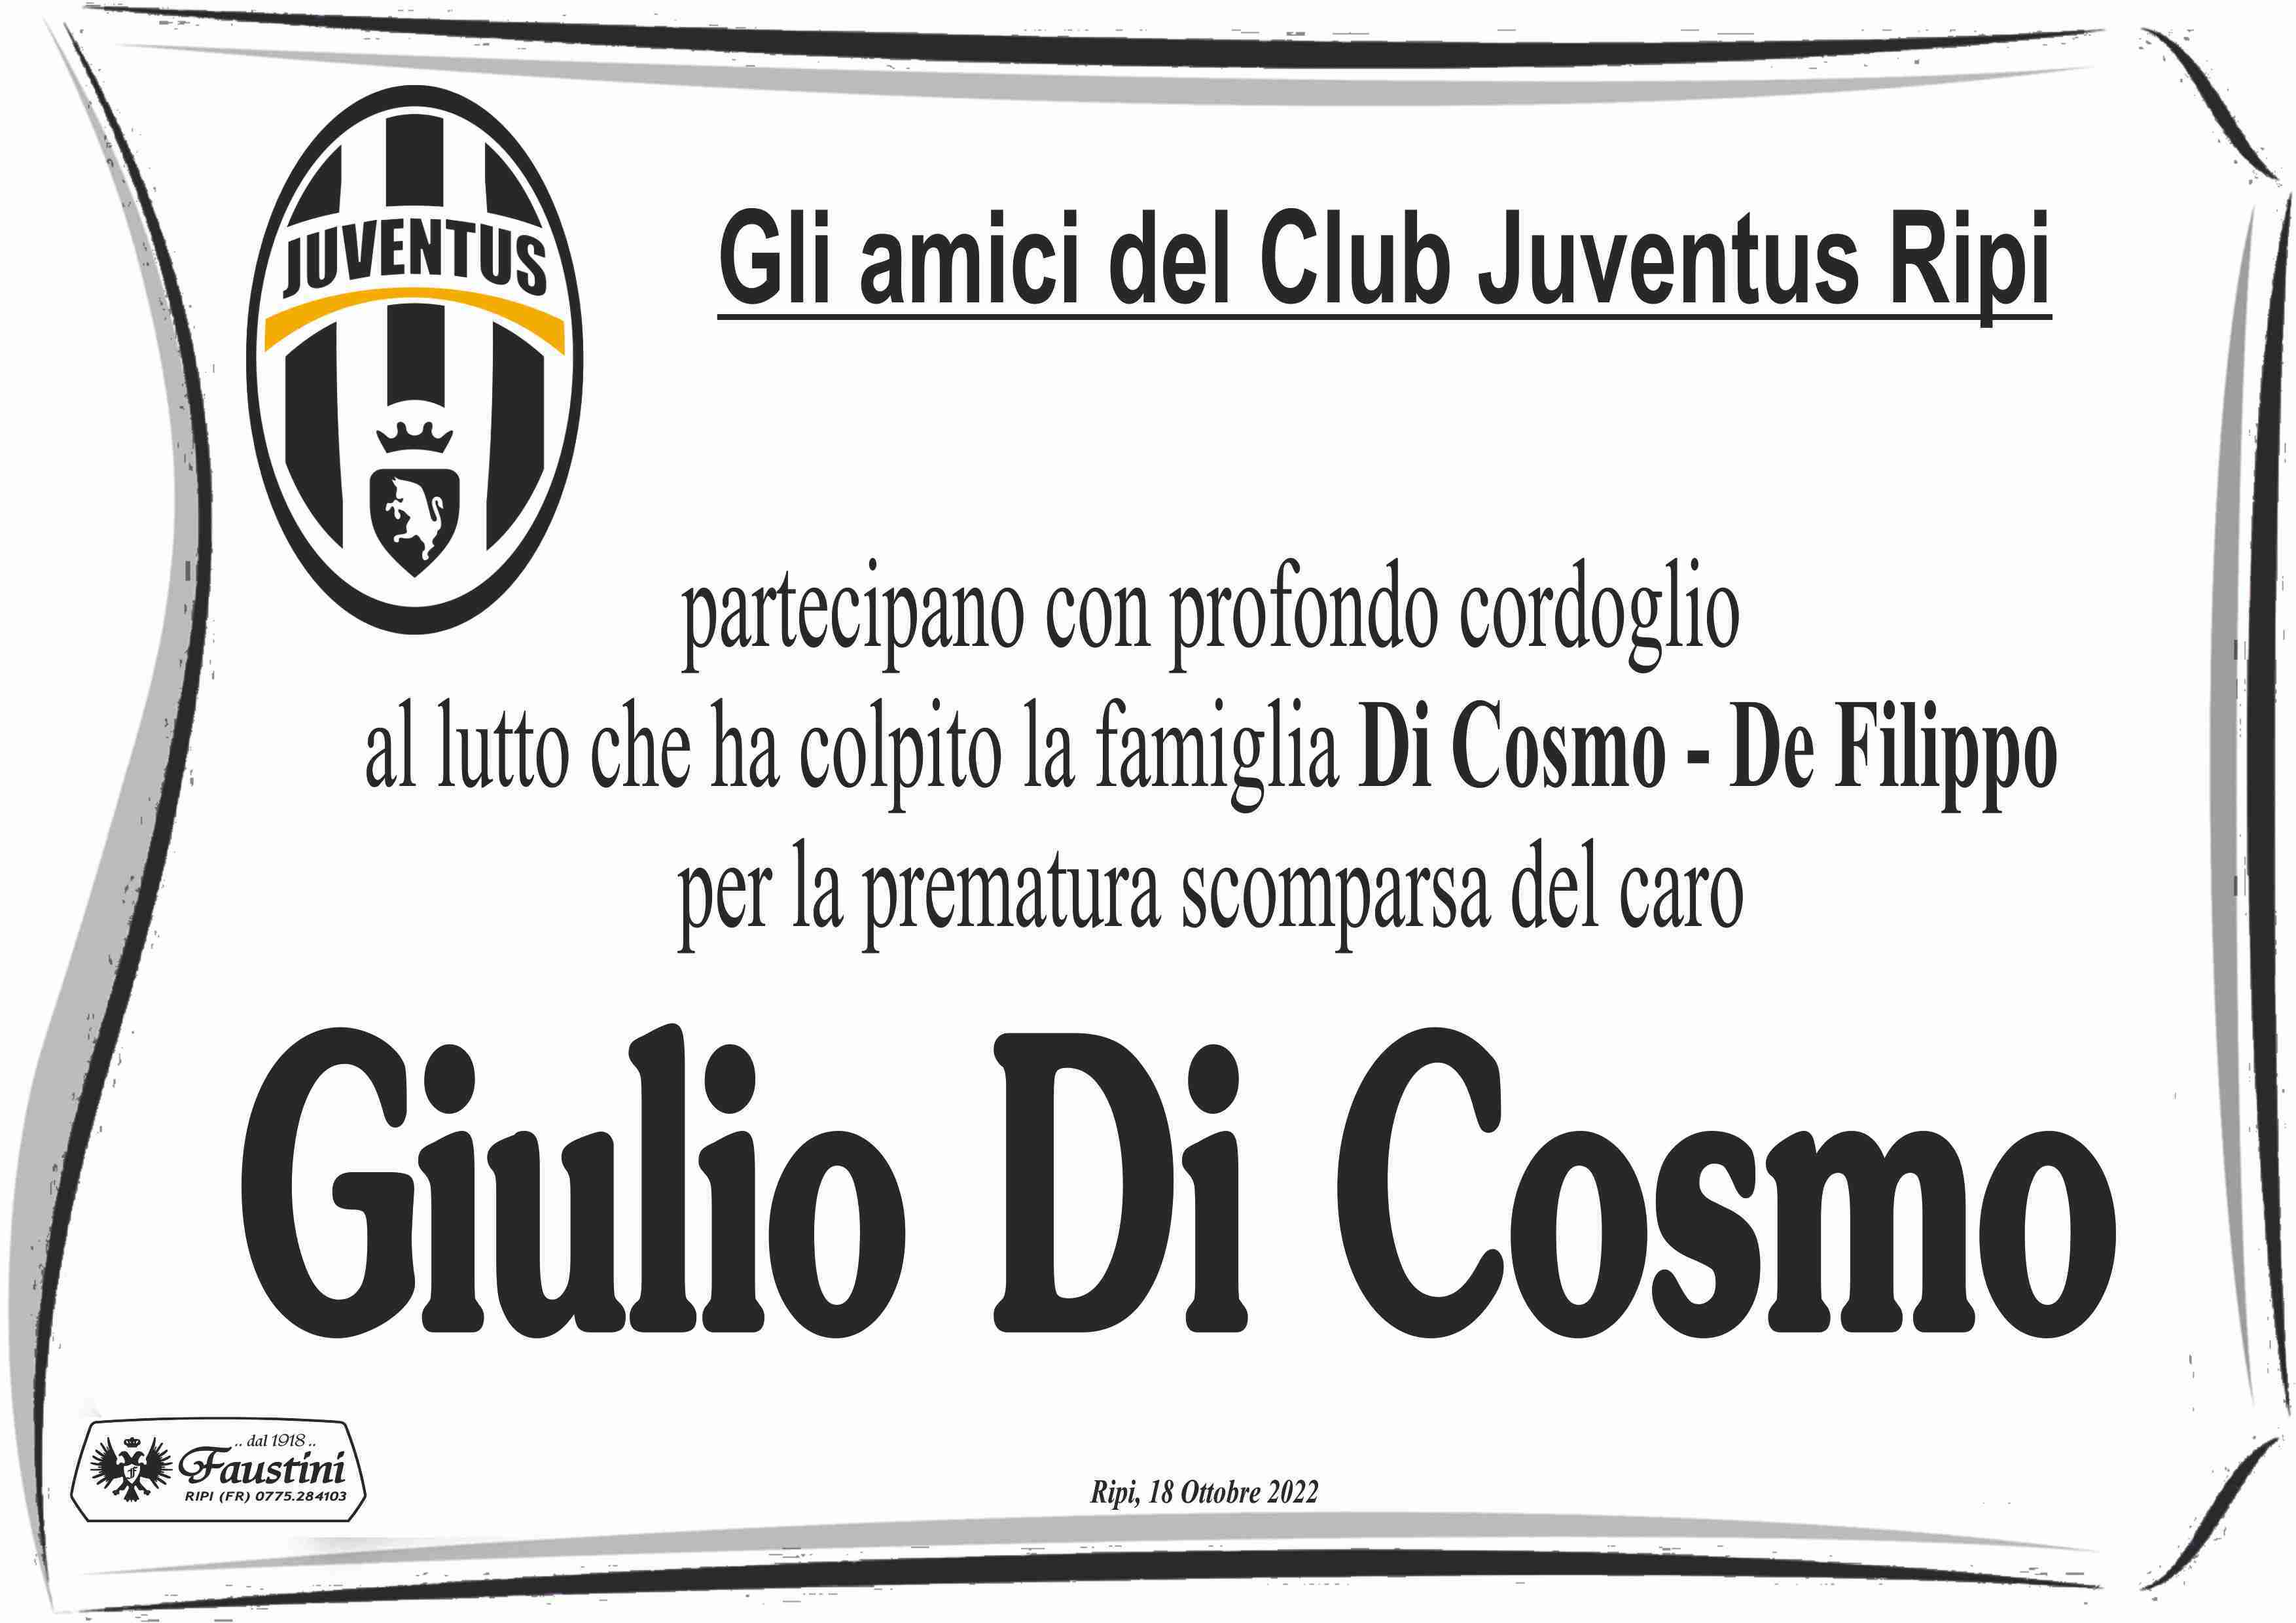 Giulio Di Cosmo